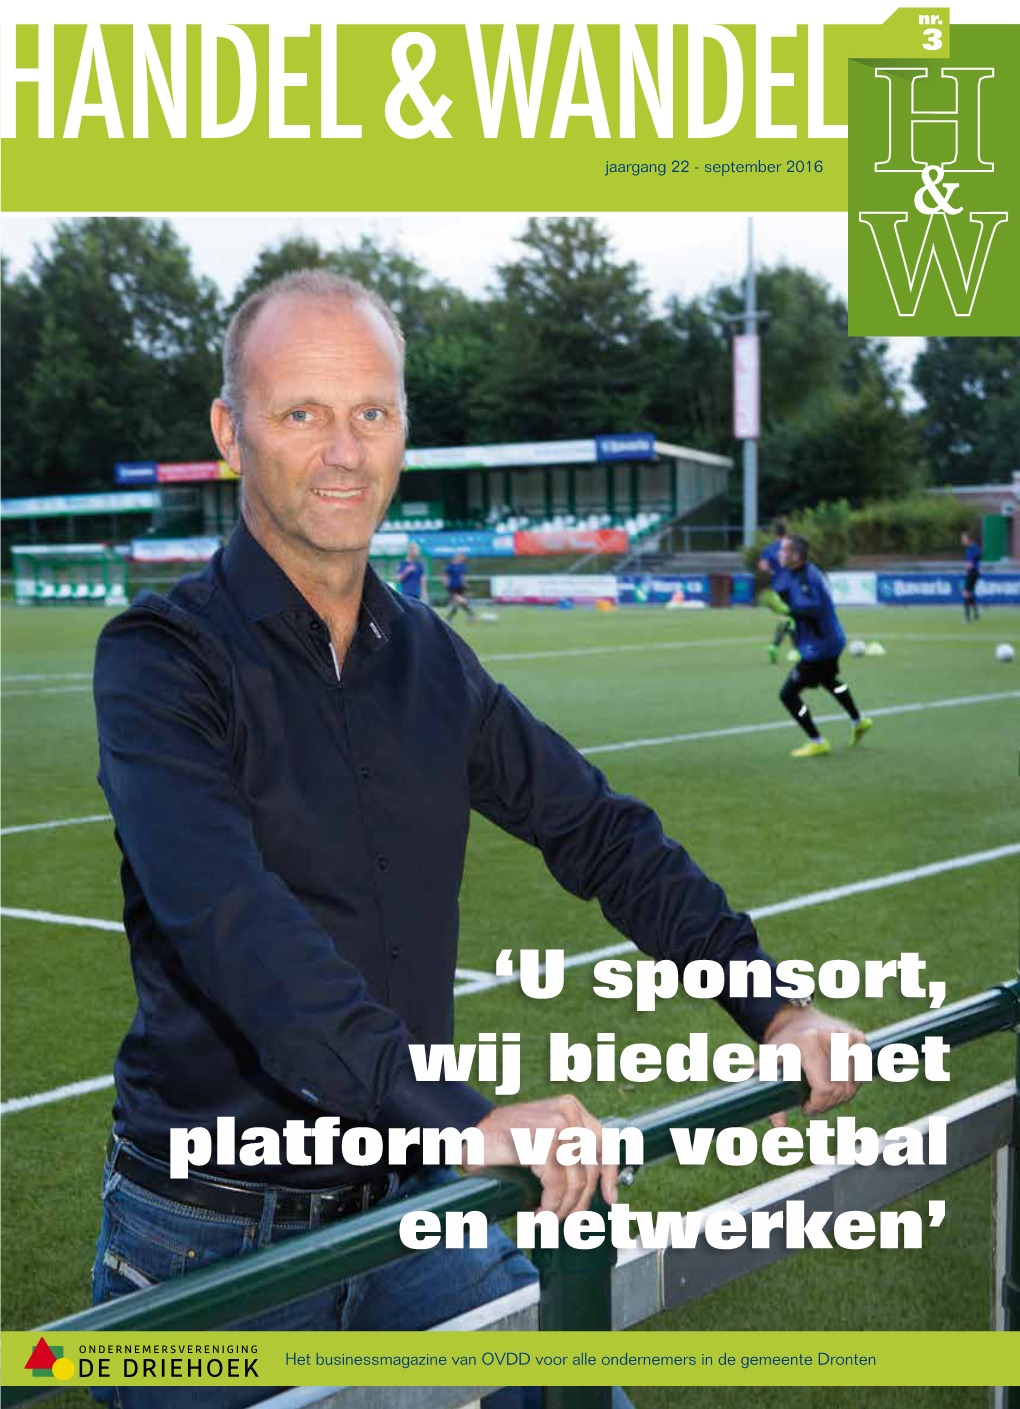 'U Sponsort, Wij Bieden Het Platform Van Voetbal En Netwerken'